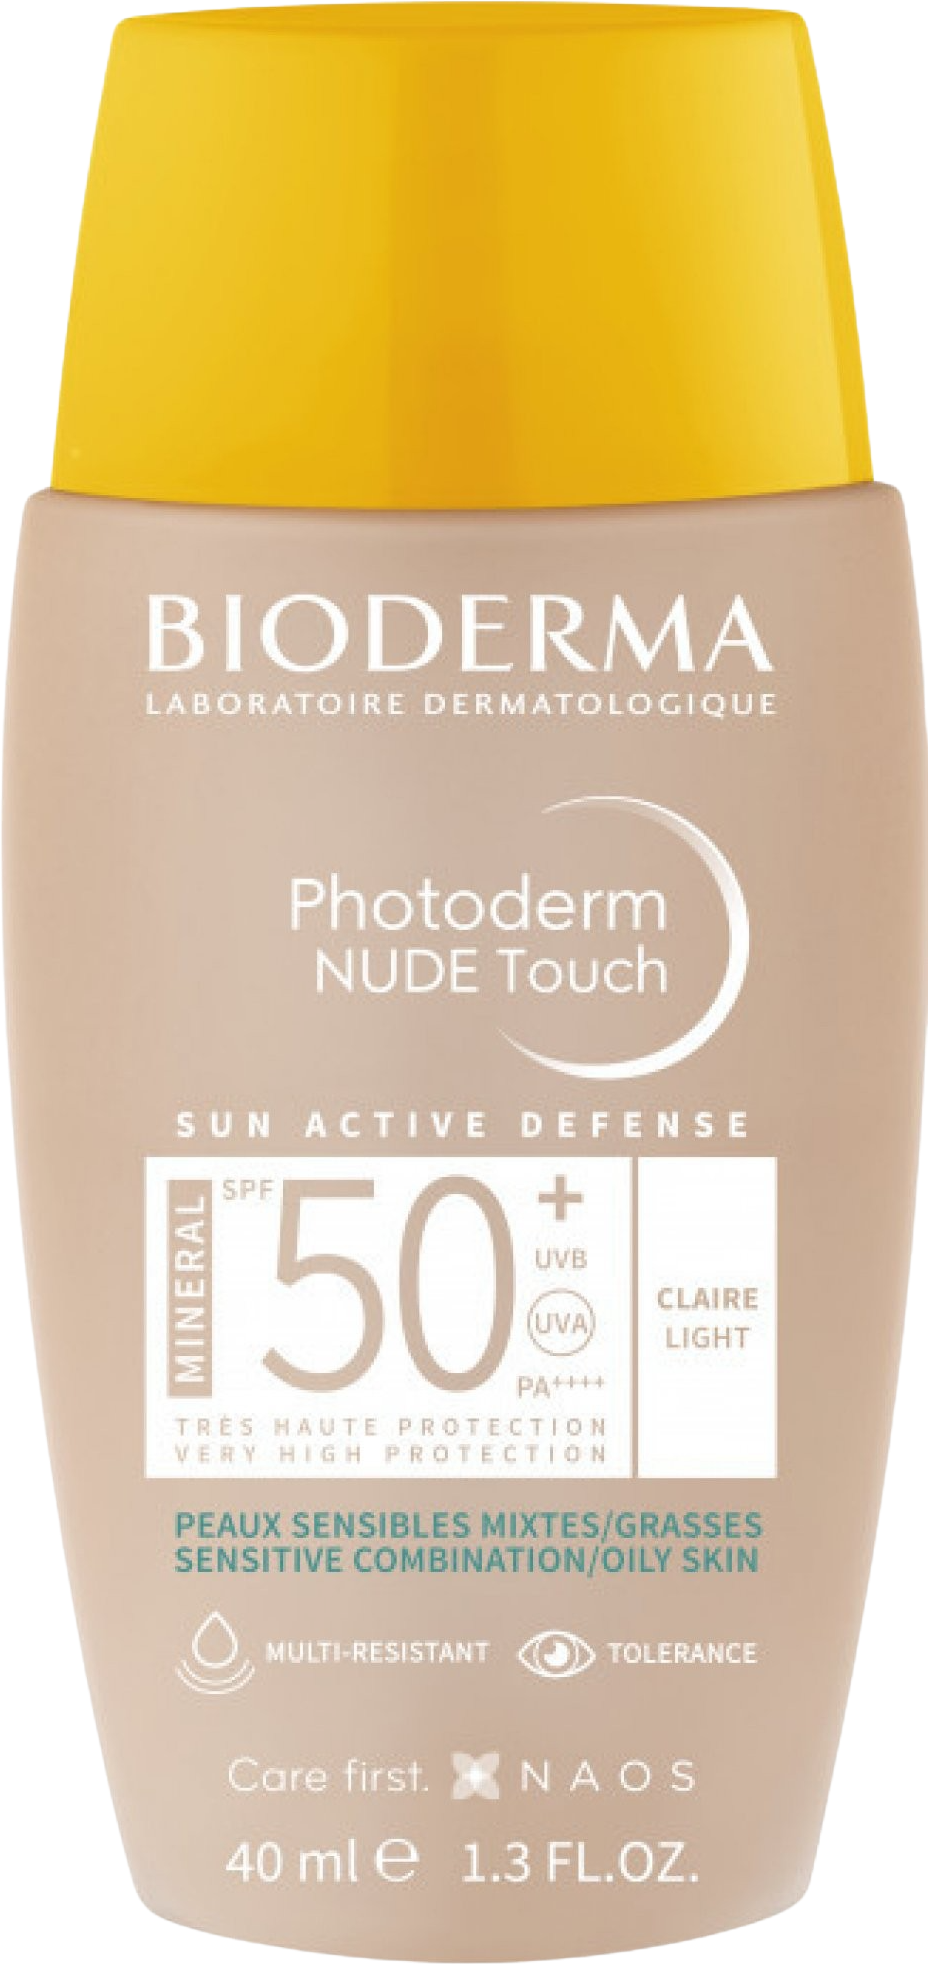 Bioderma Photoderm NUDE Touch světlý SPF 50+ 40 ml